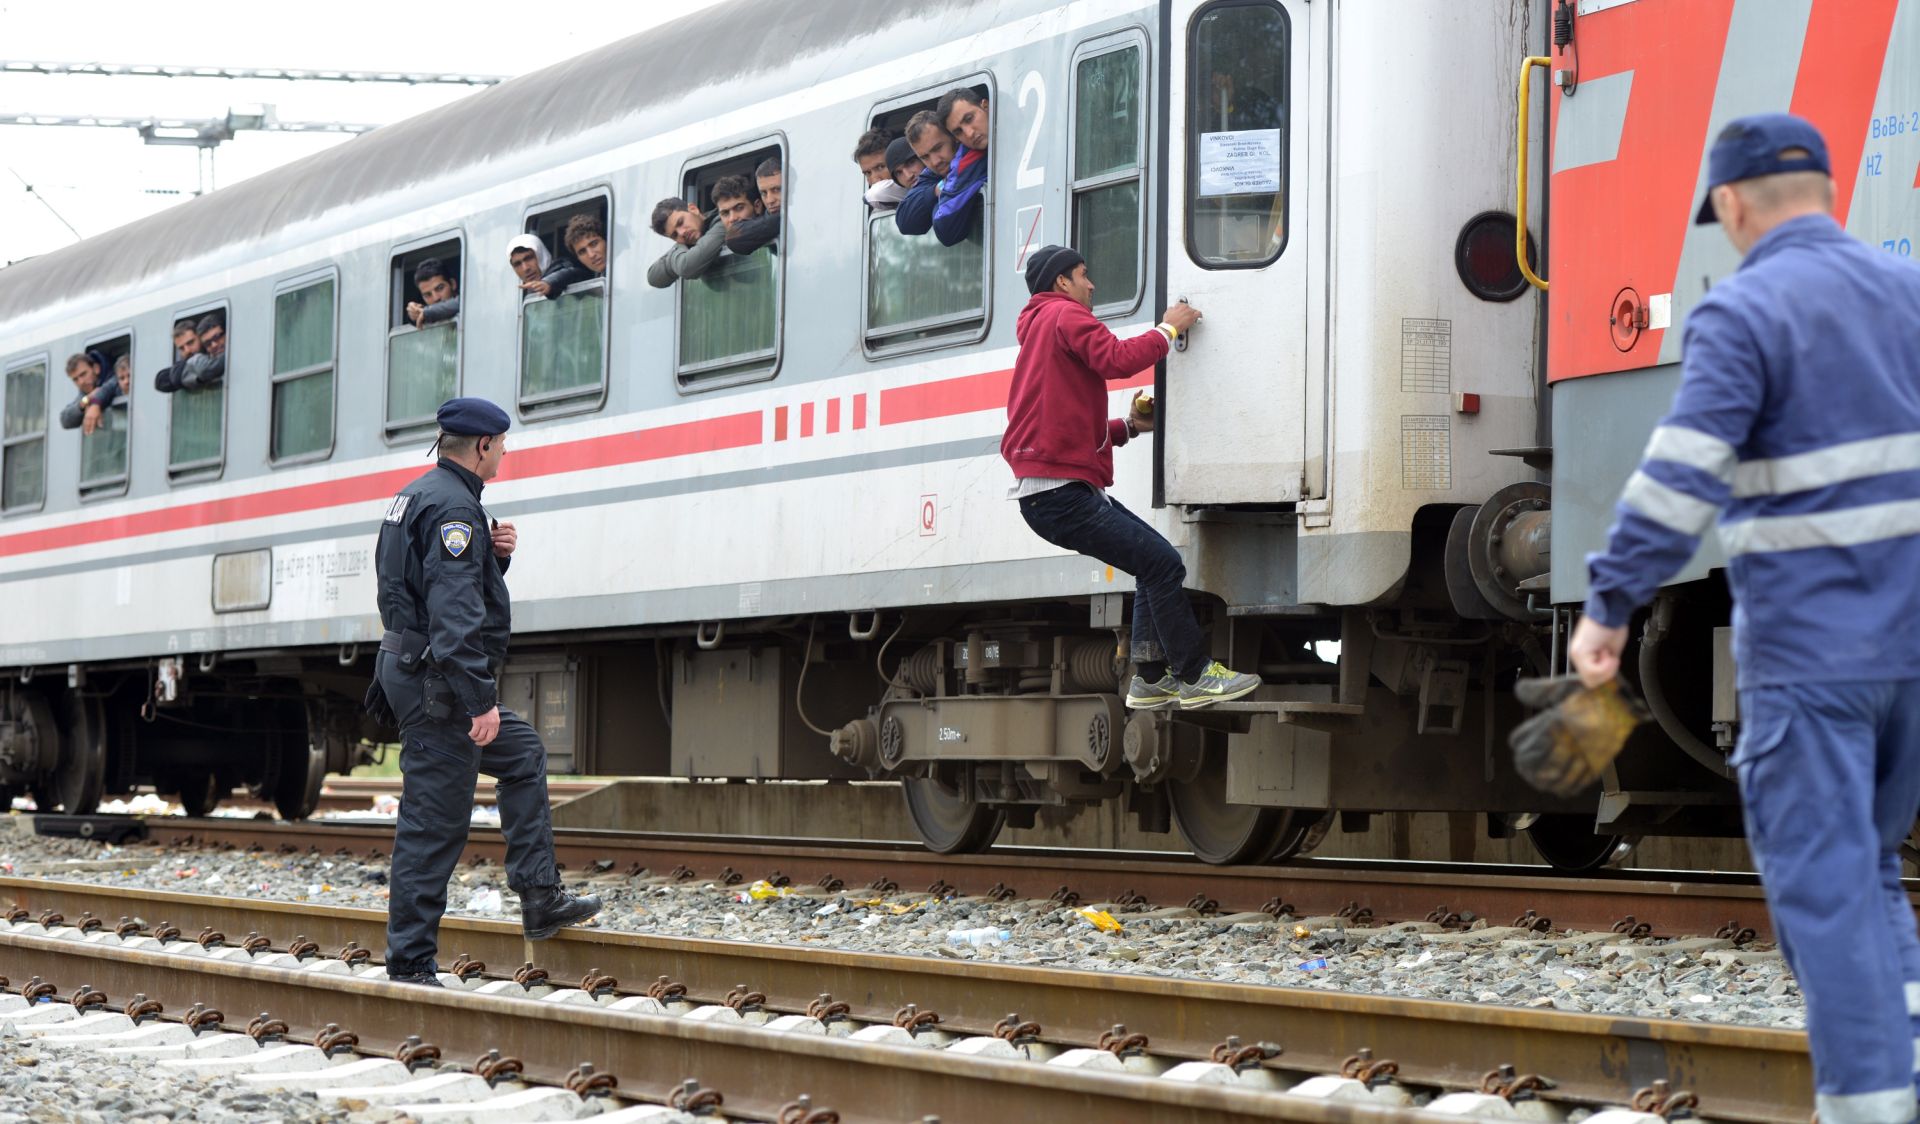 30.09.2015. Tovarnik - U 12:56 krenuo je 35. izvanredni vlak s izbjeglicama iz Tovarnika u Botovo.
Photo: Marko Jurinec/PIXSELL